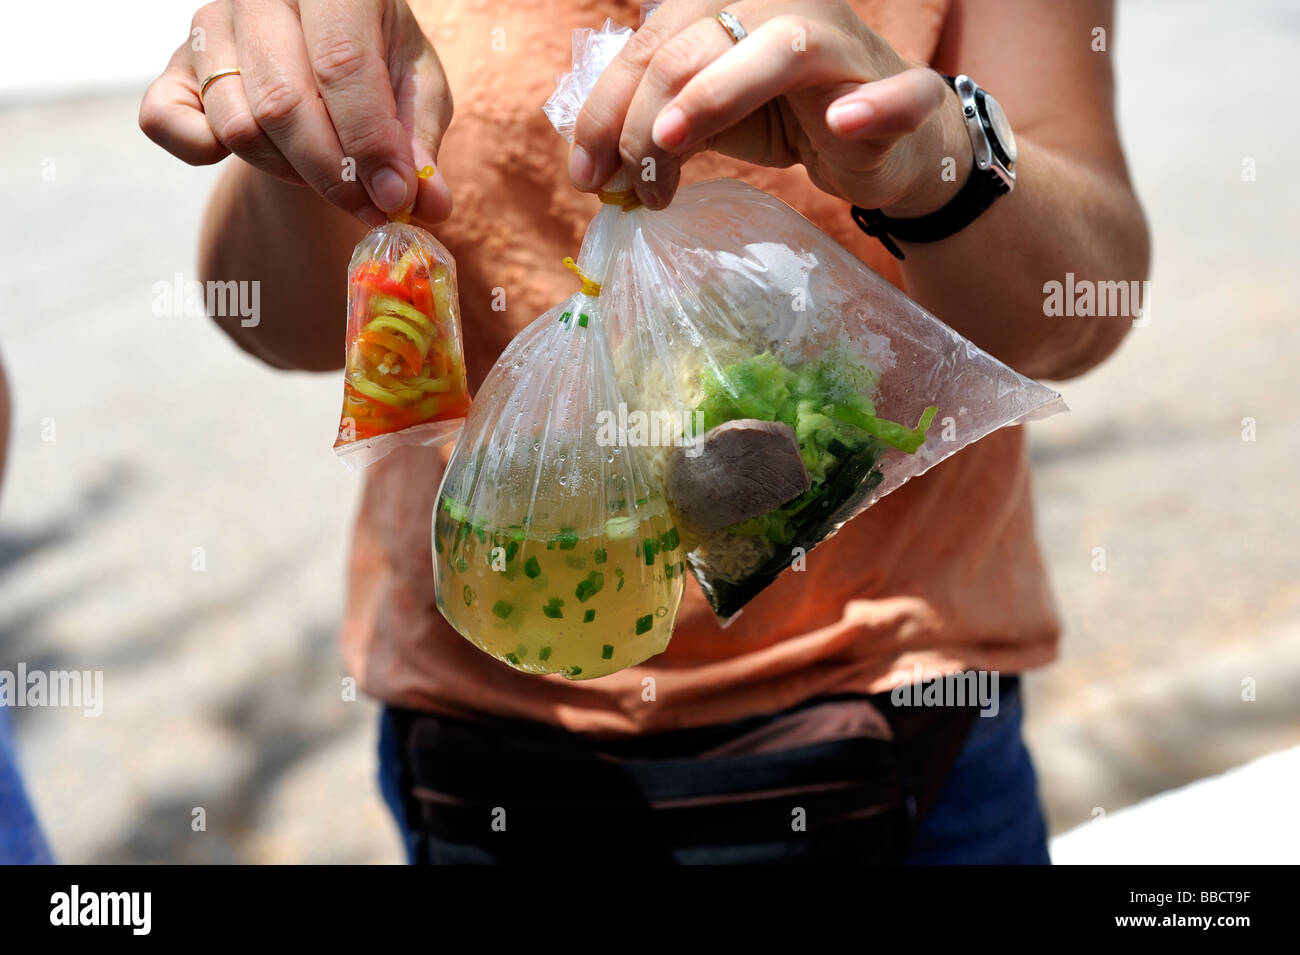 Stile vietnamita di cibo da asporto, compresa la zuppa, in sacchetti di plastica Foto Stock